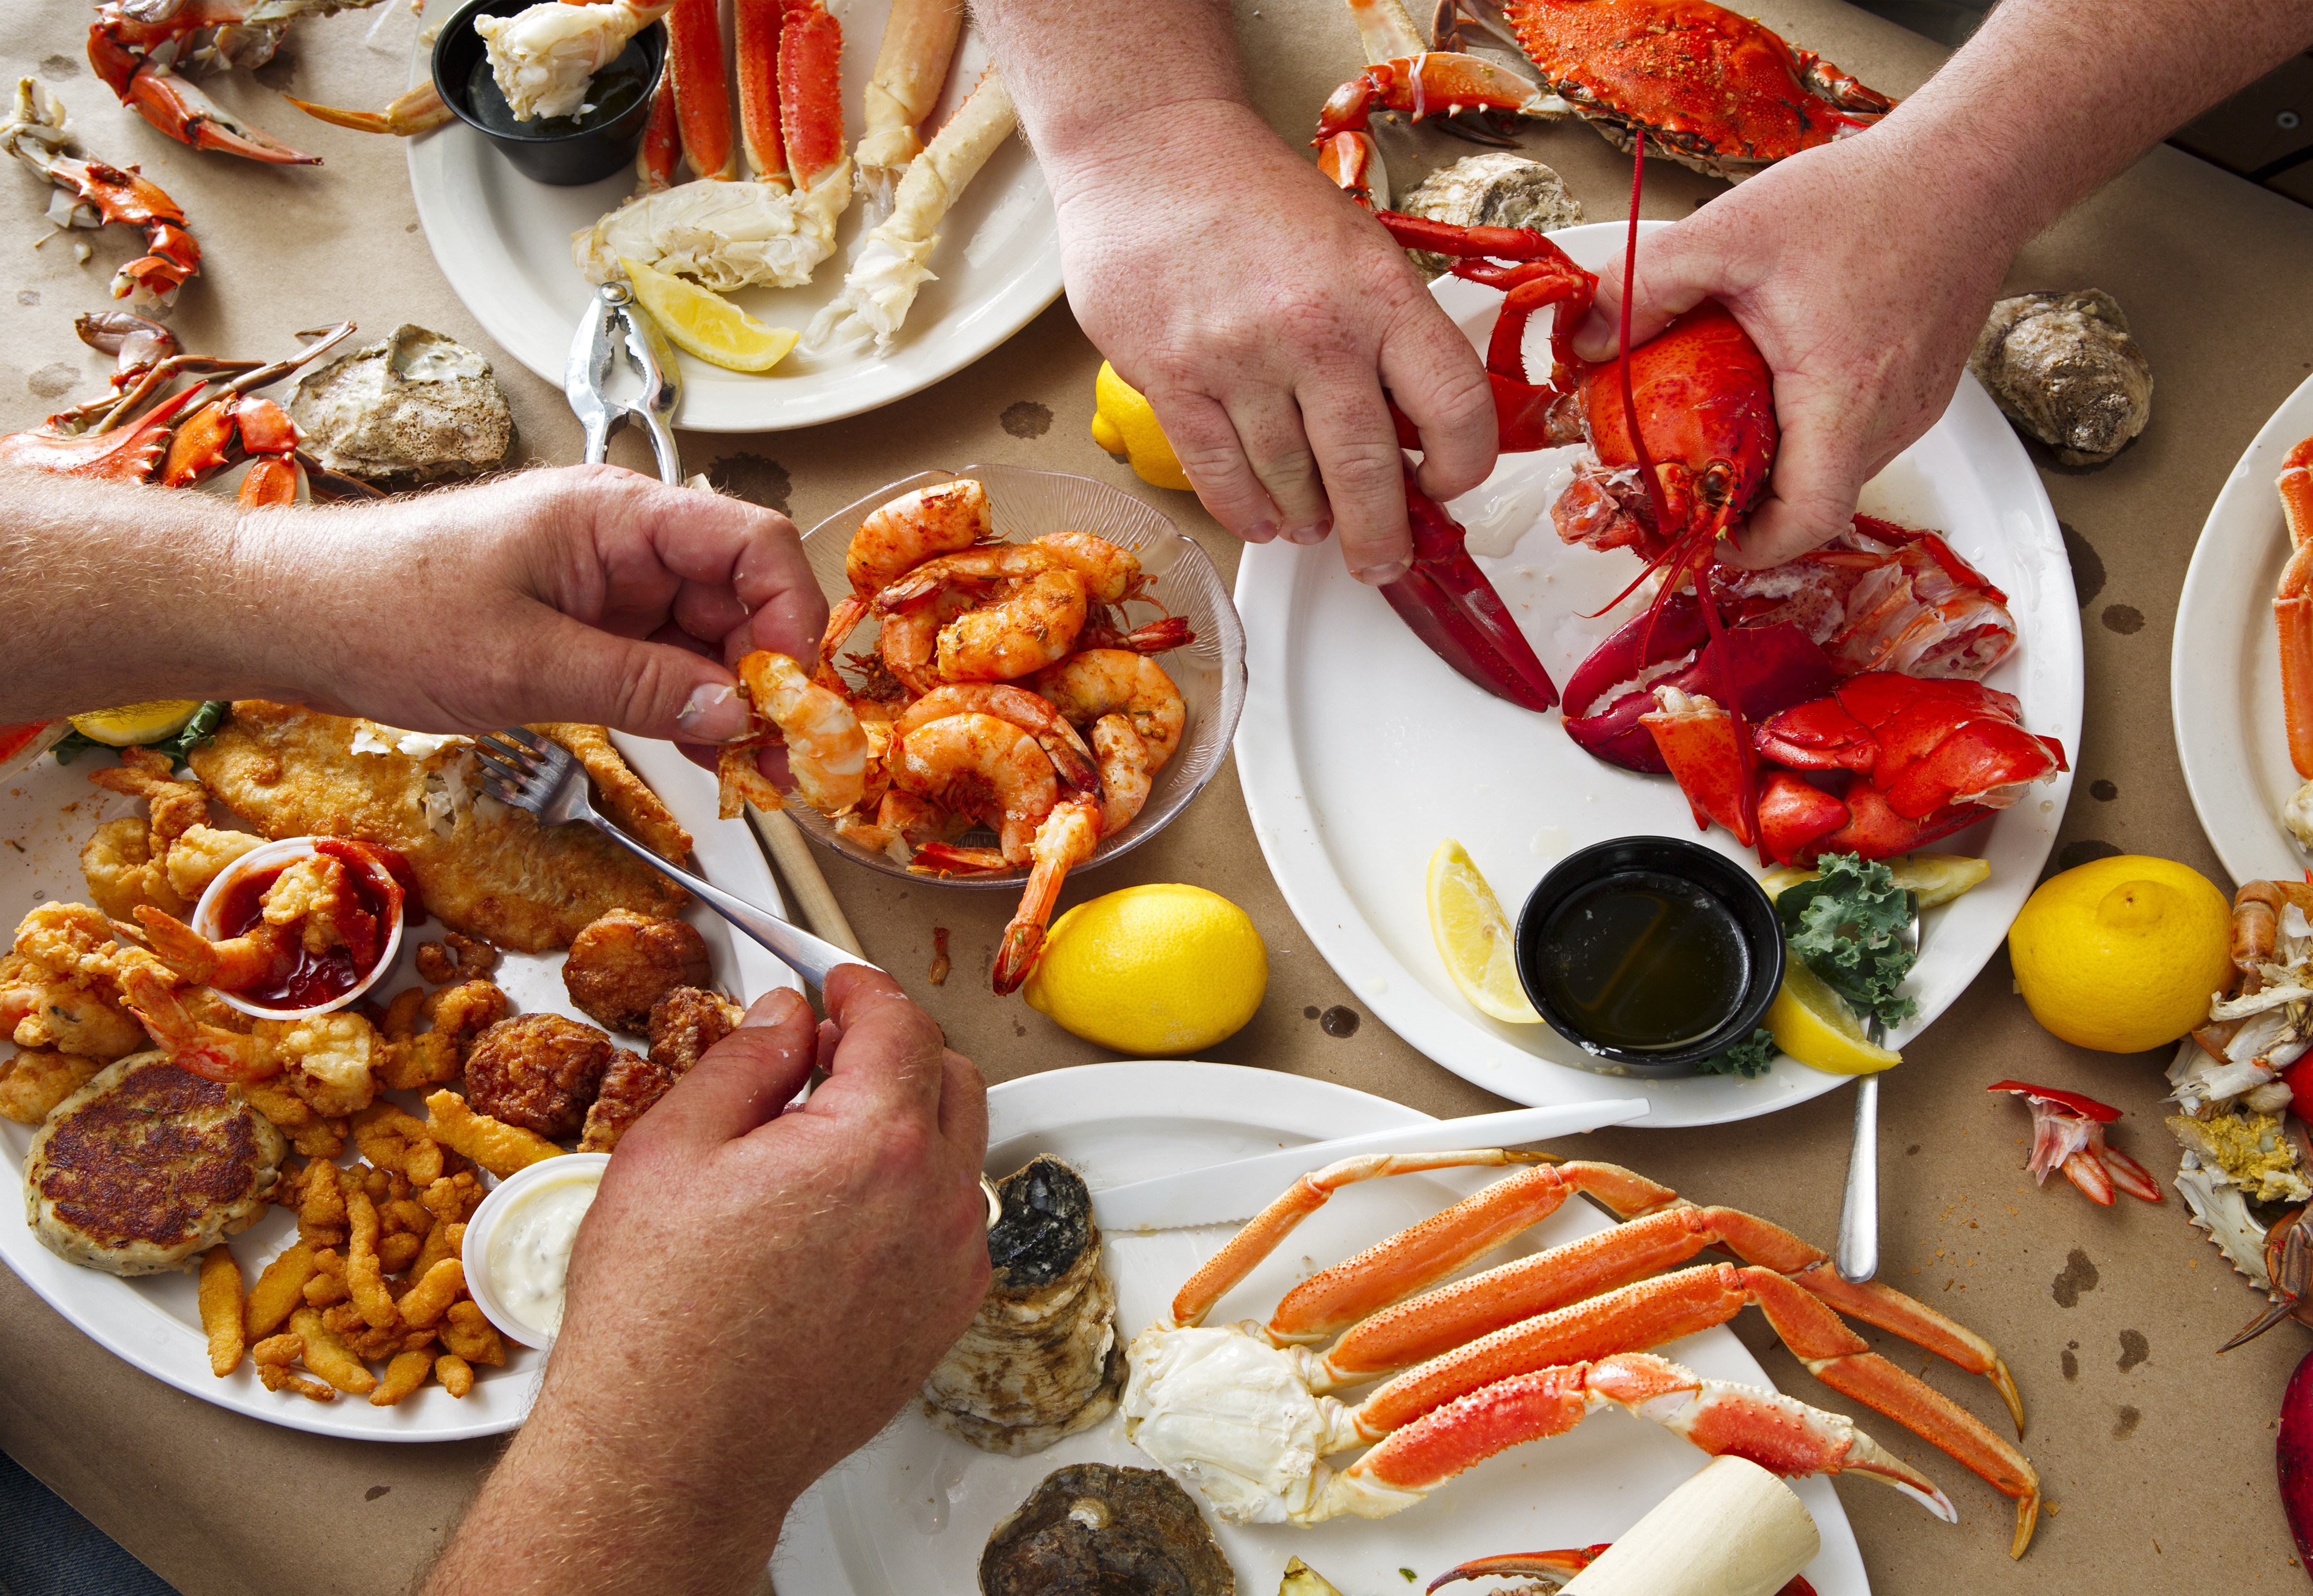 Un couple dîne dans un restaurant de fruits de mer | Source : Shutterstock